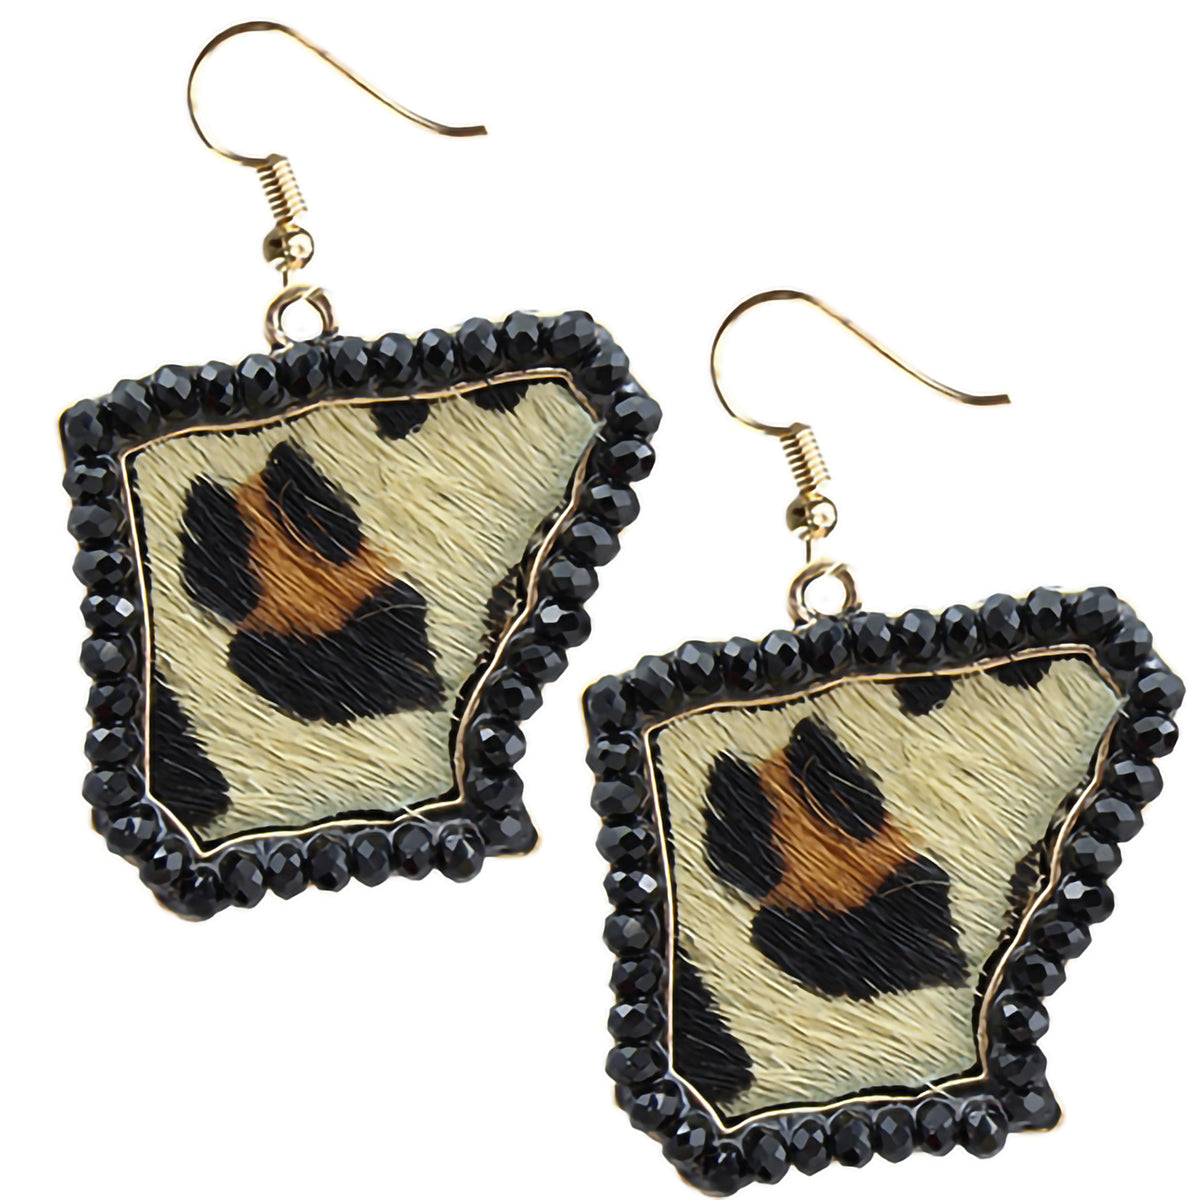 73606 - Arkansas Earrings - Black - Fashion Jewelry Wholesale